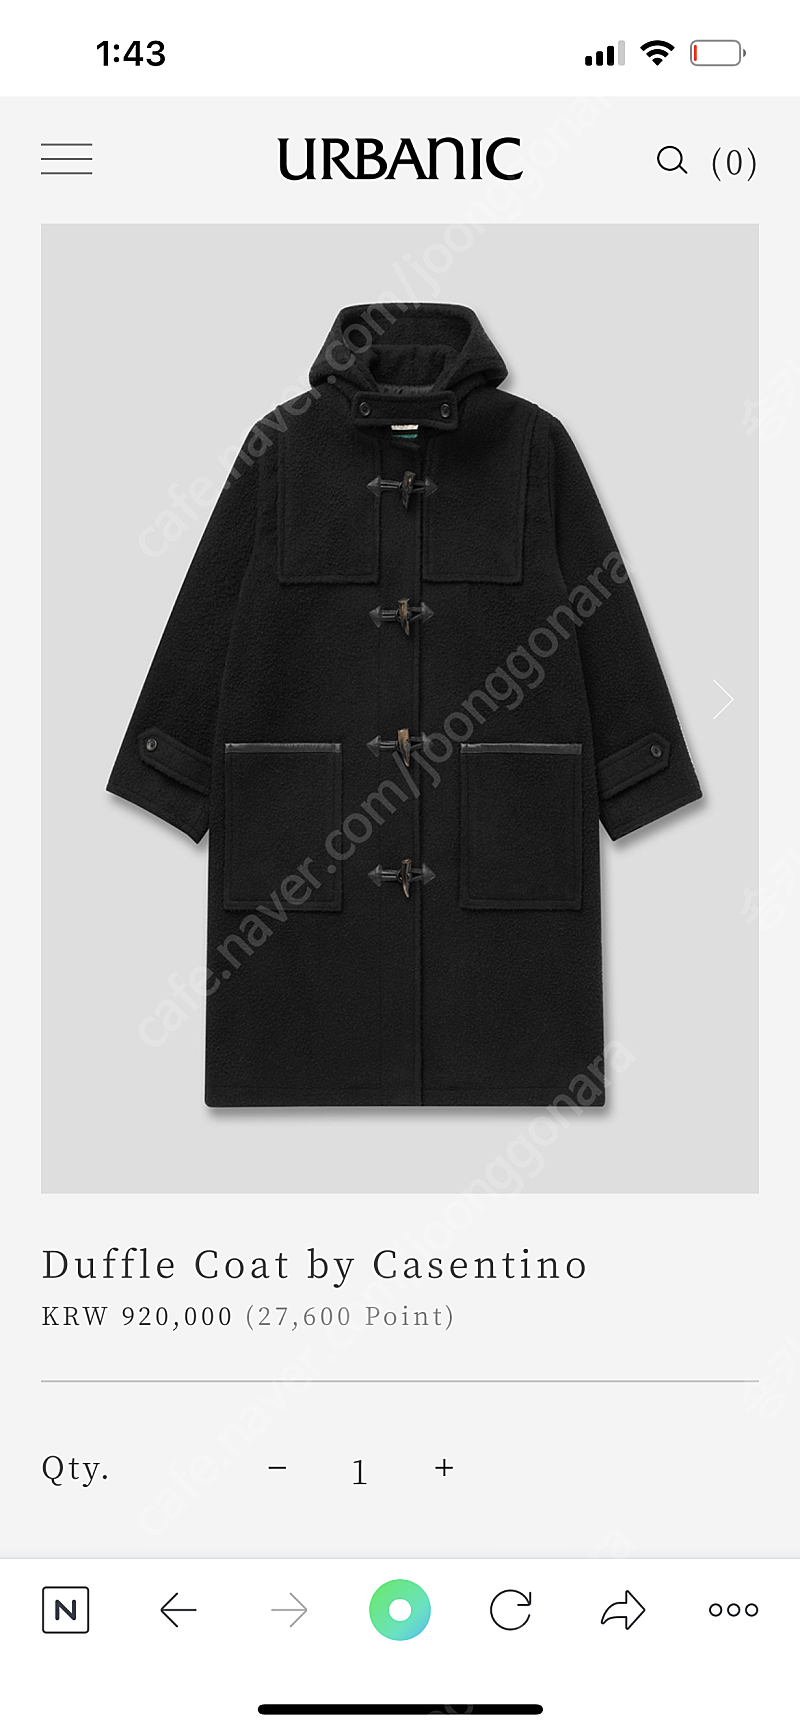 Urbanic30 Duffle Coat by Casentino 구해요!!